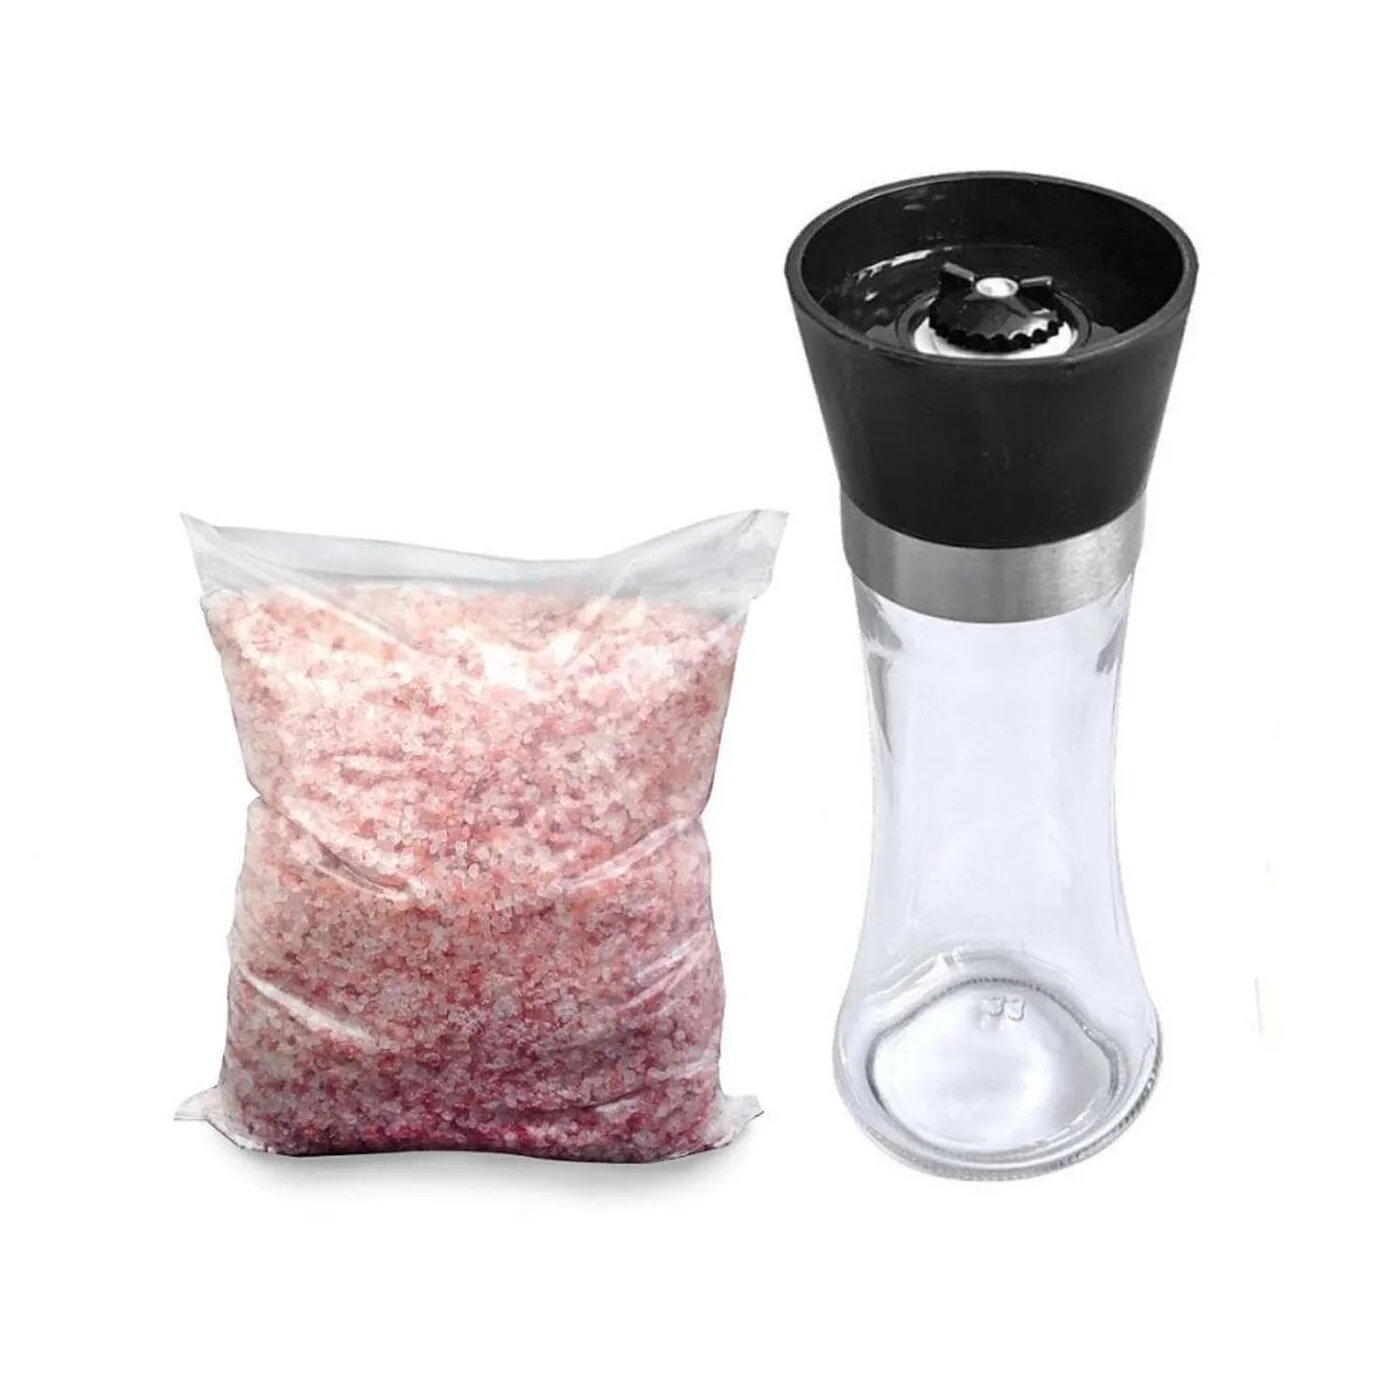 Мельница для соли и перца Wonder Life стекло пластик керамические жернова 200мл + 500г гималайской розовой соли 2-5 мм